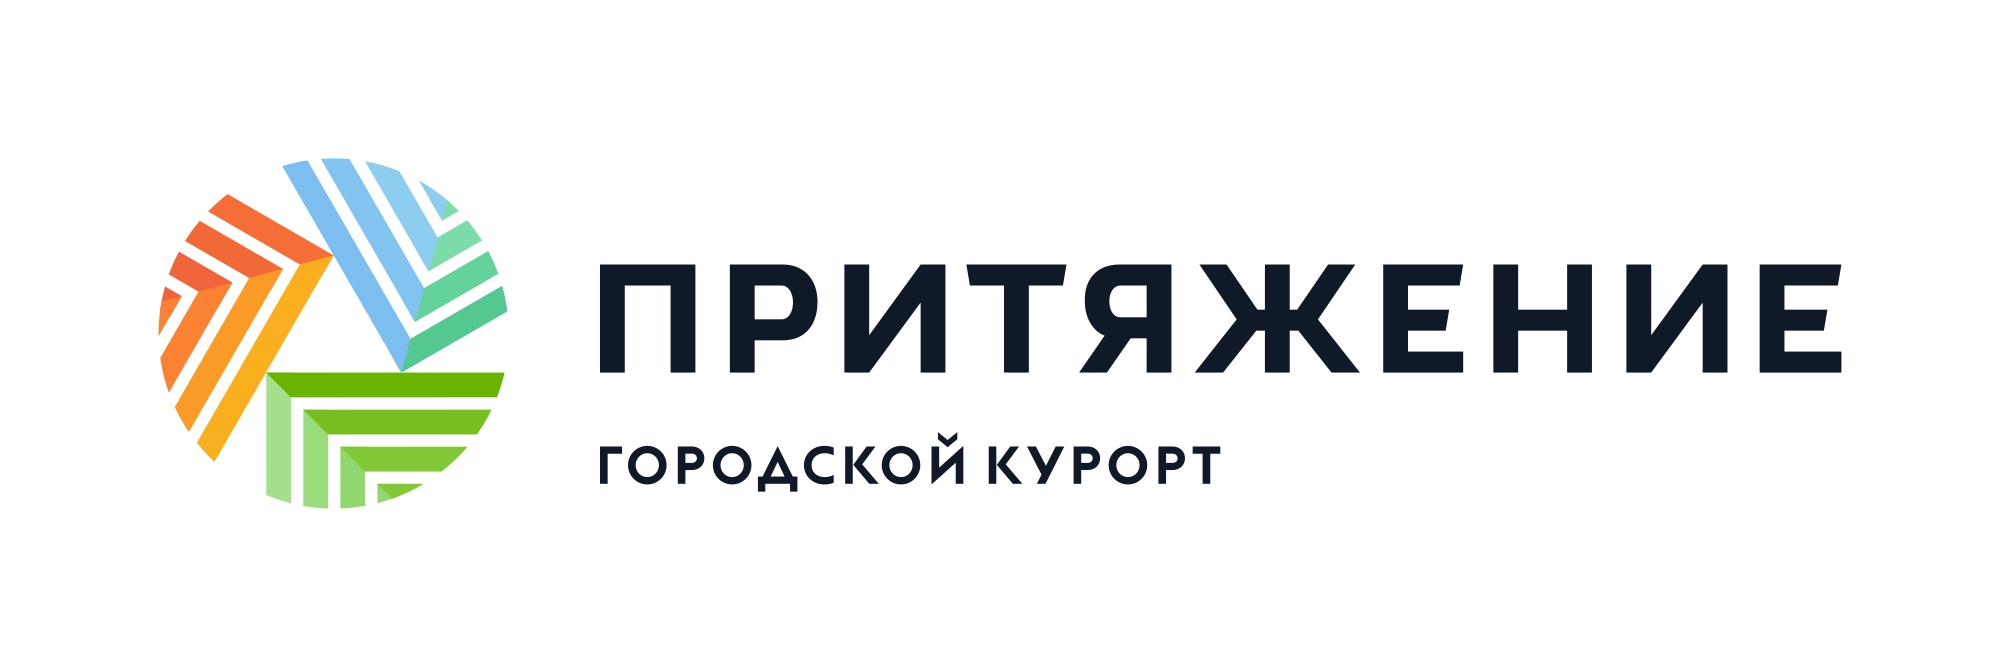 Логотип Городской курорт "Притяжение"